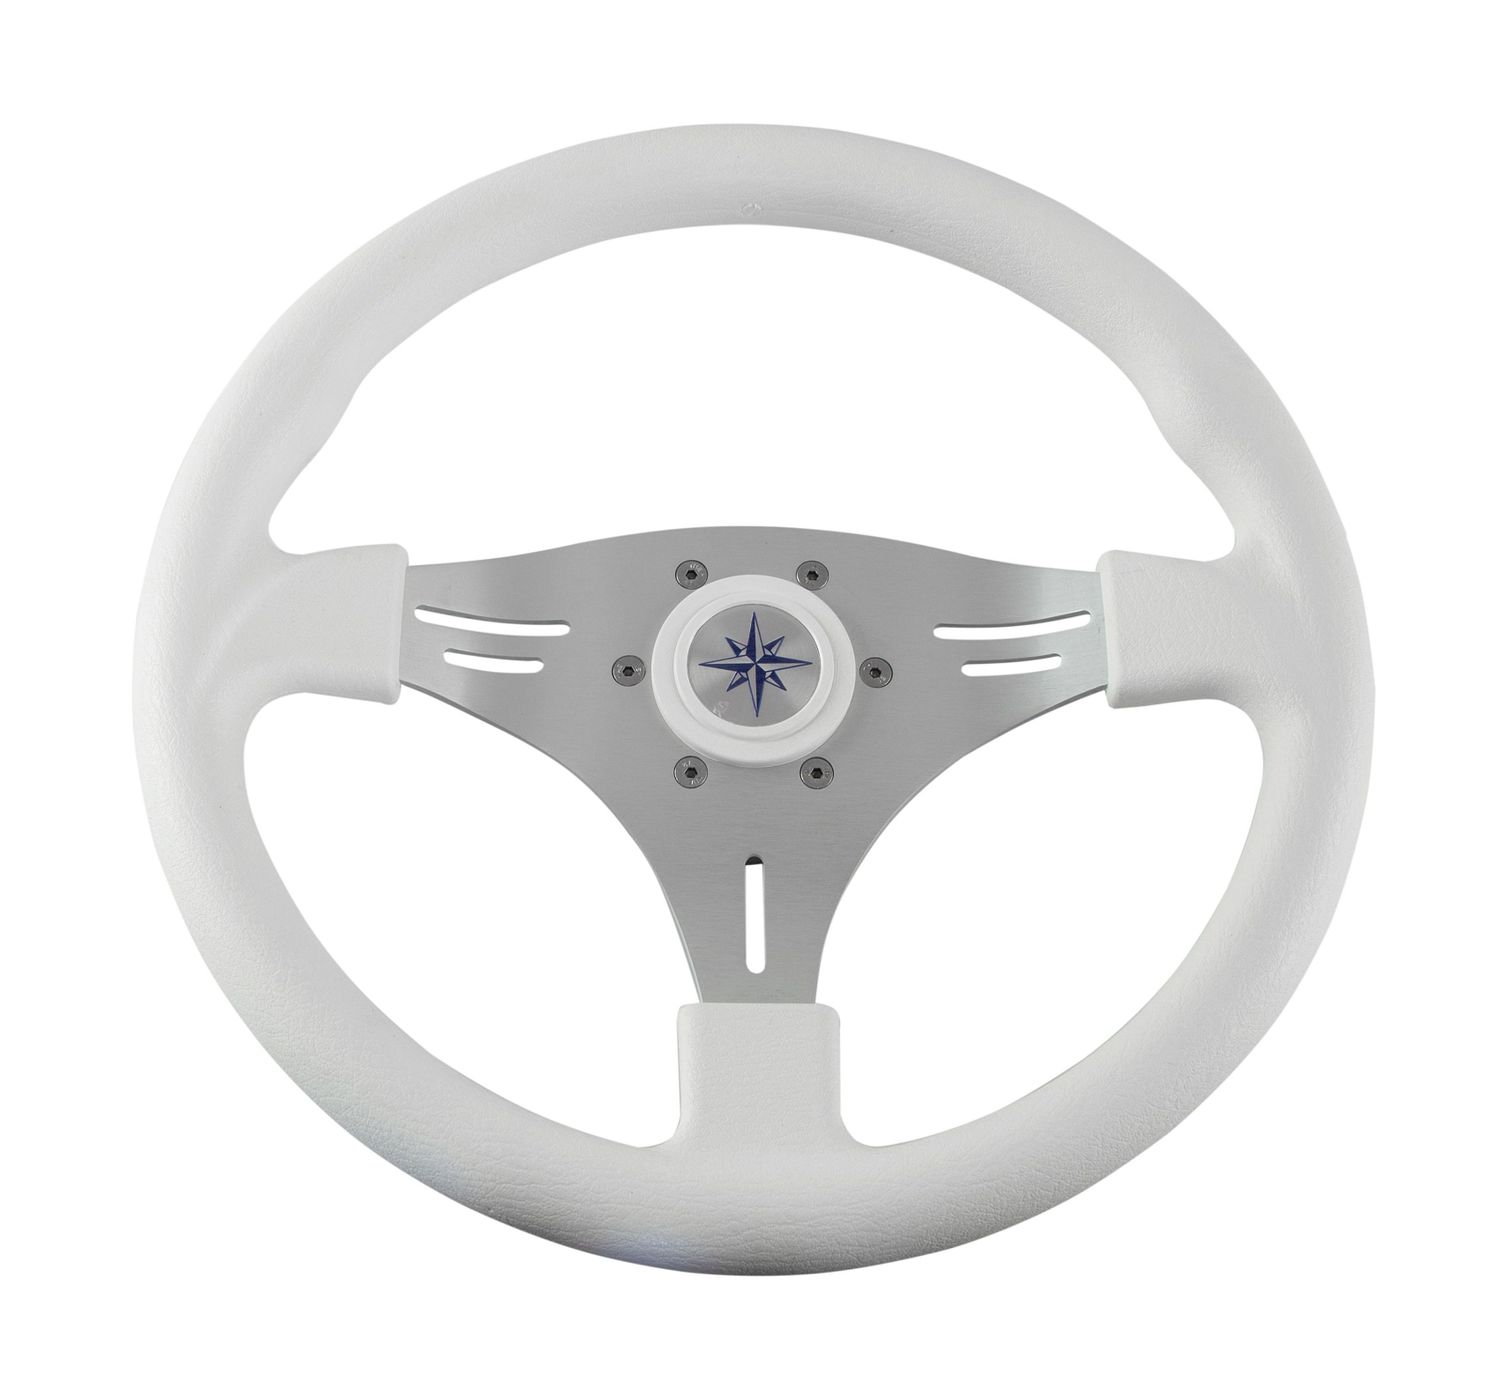 Рулевое колесо MANTA обод белый, спицы серебряные д. 355 мм VN70551-08 рулевое колесо leader plast белый обод серебряные спицы д 330 мм vn8330 08